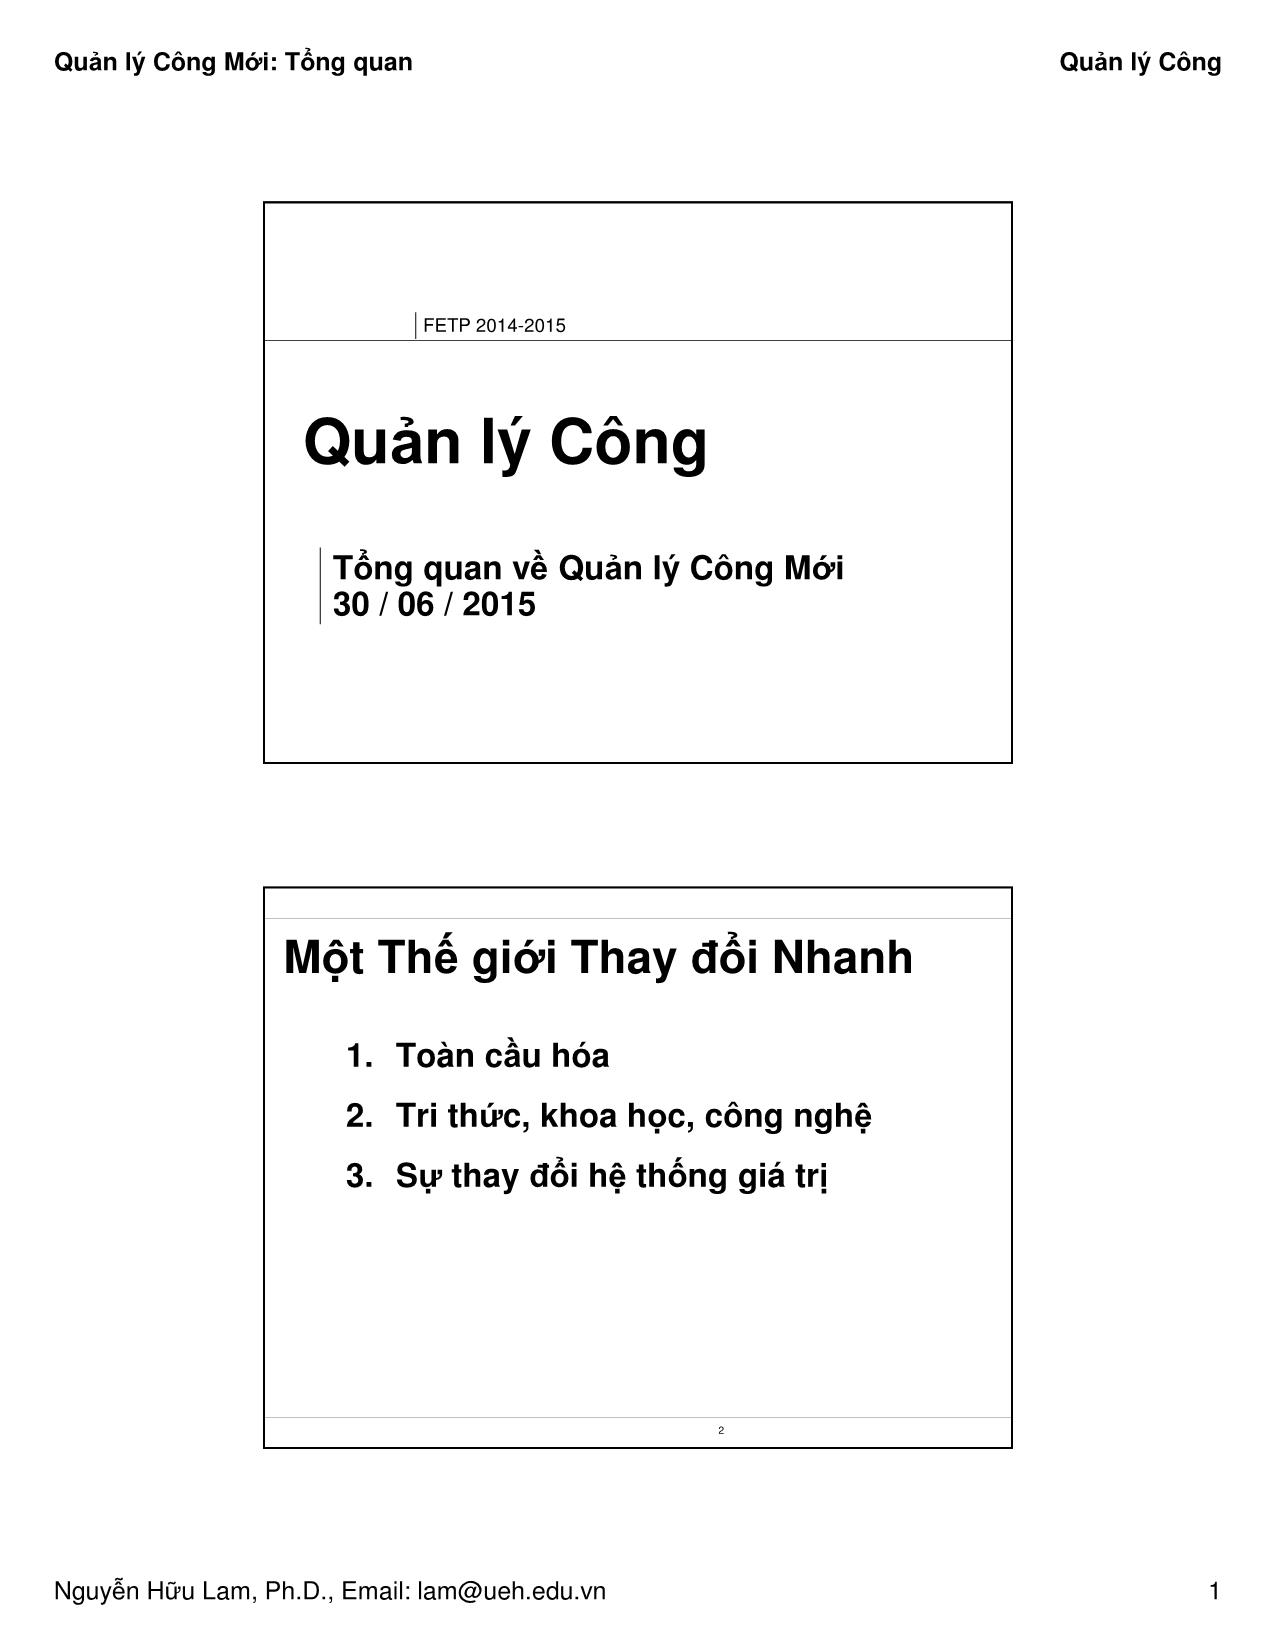 Bài giảng Quản lý công - Tổng quan - Nguyễn Hữu Lam trang 1